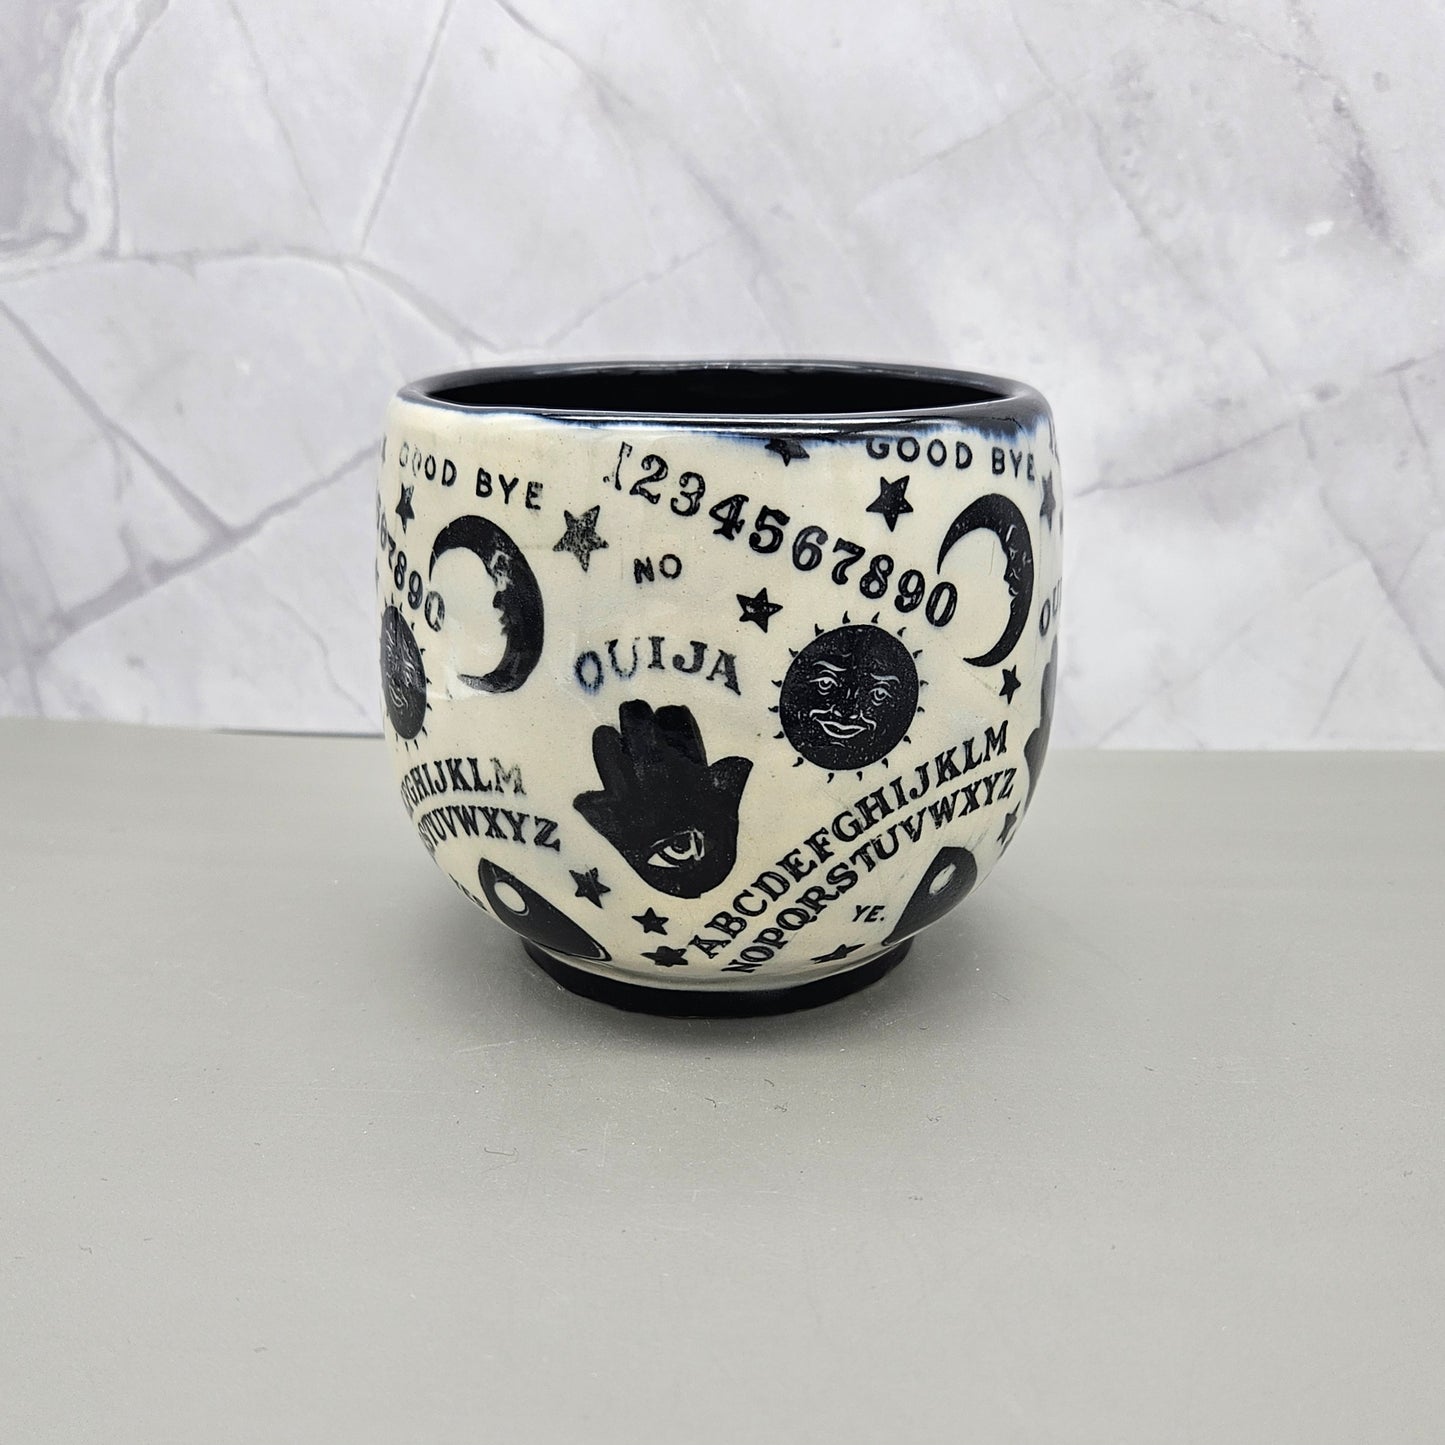 Ouija mug